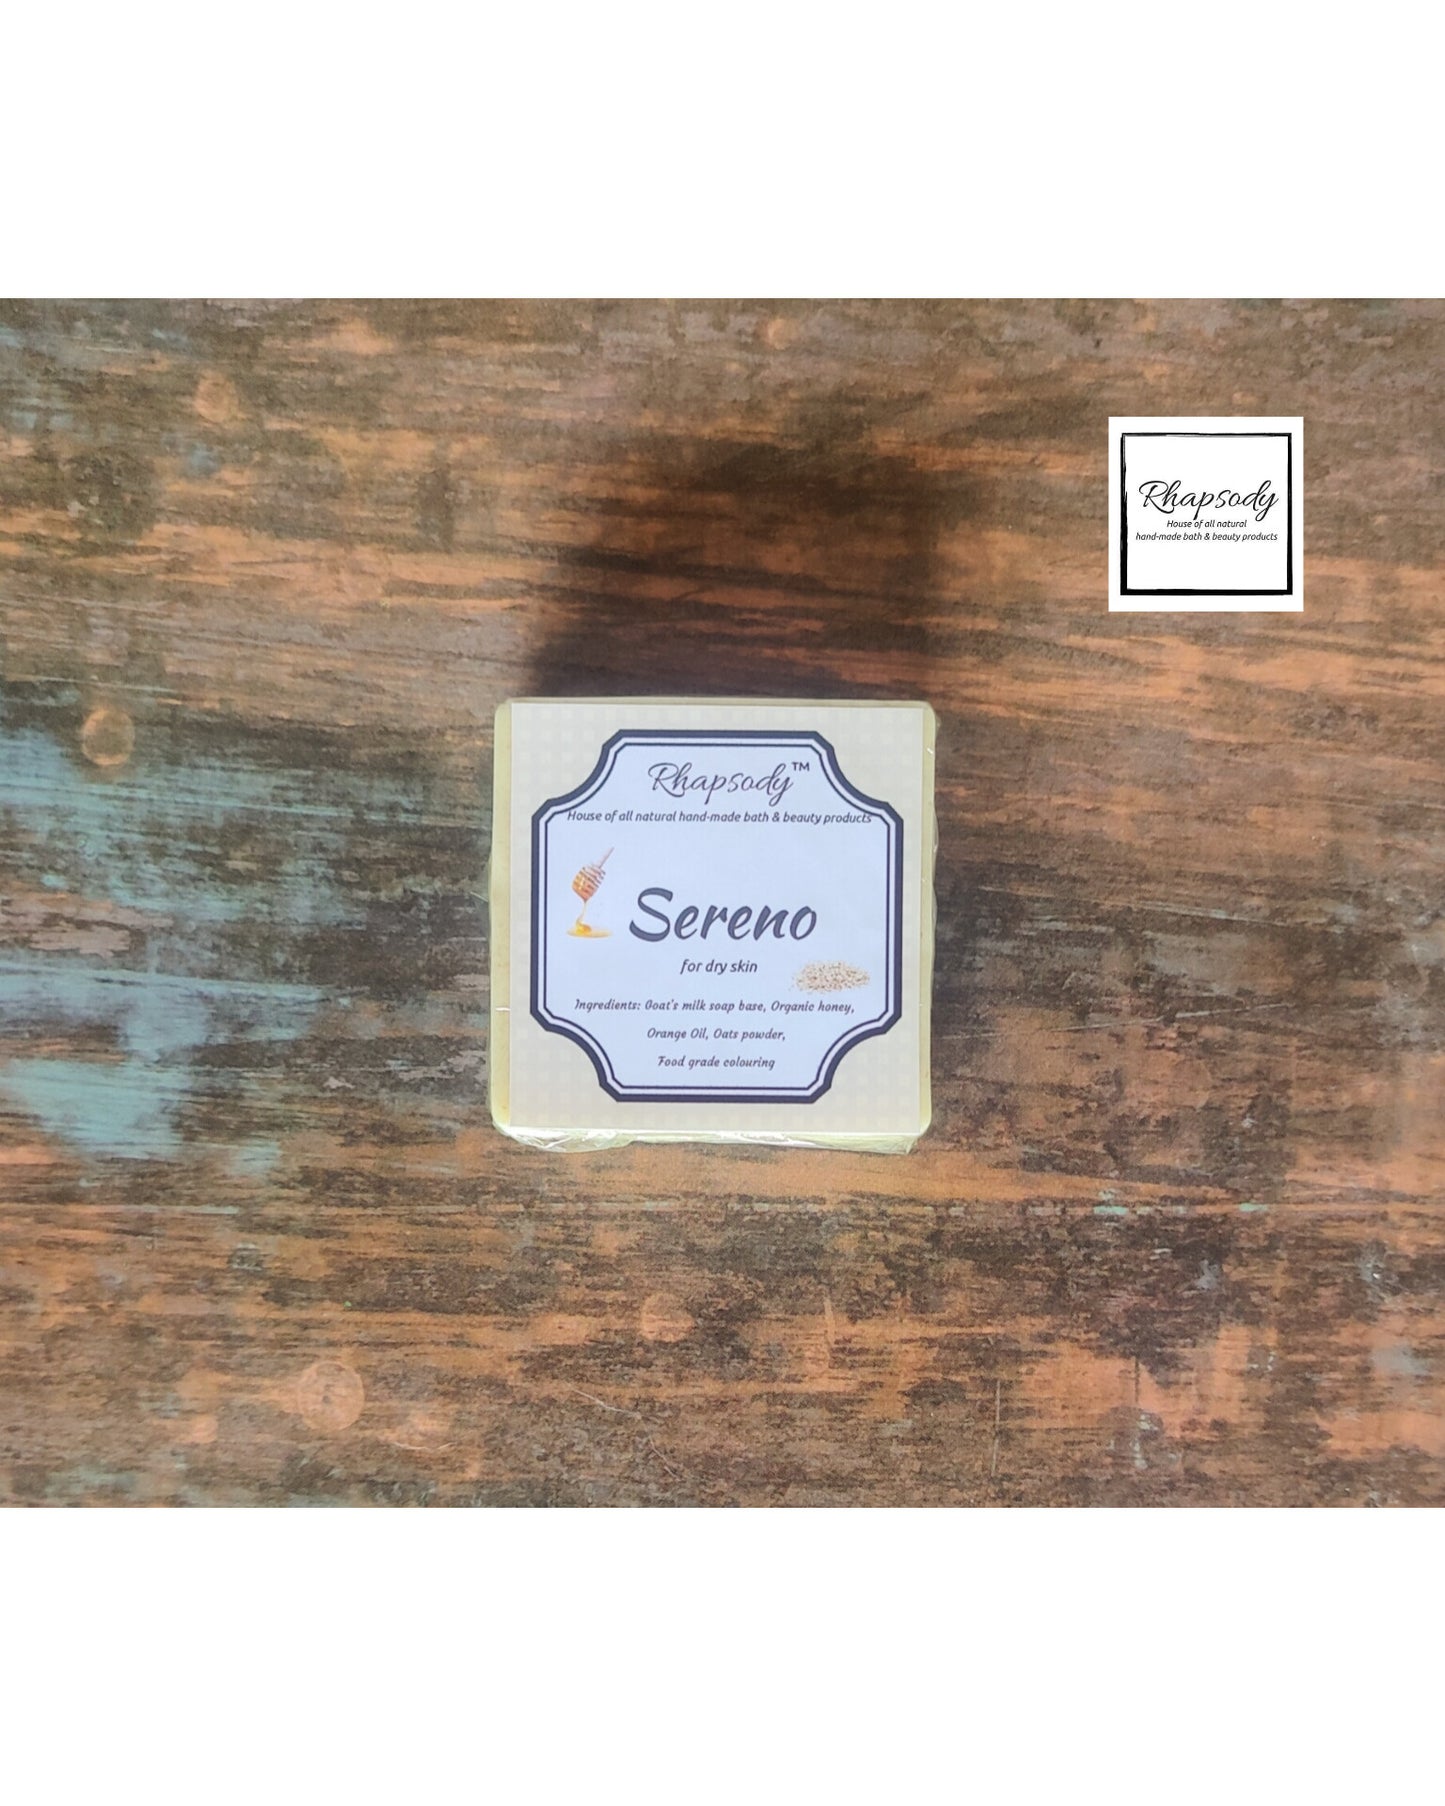 Sereno- soap for dry skin